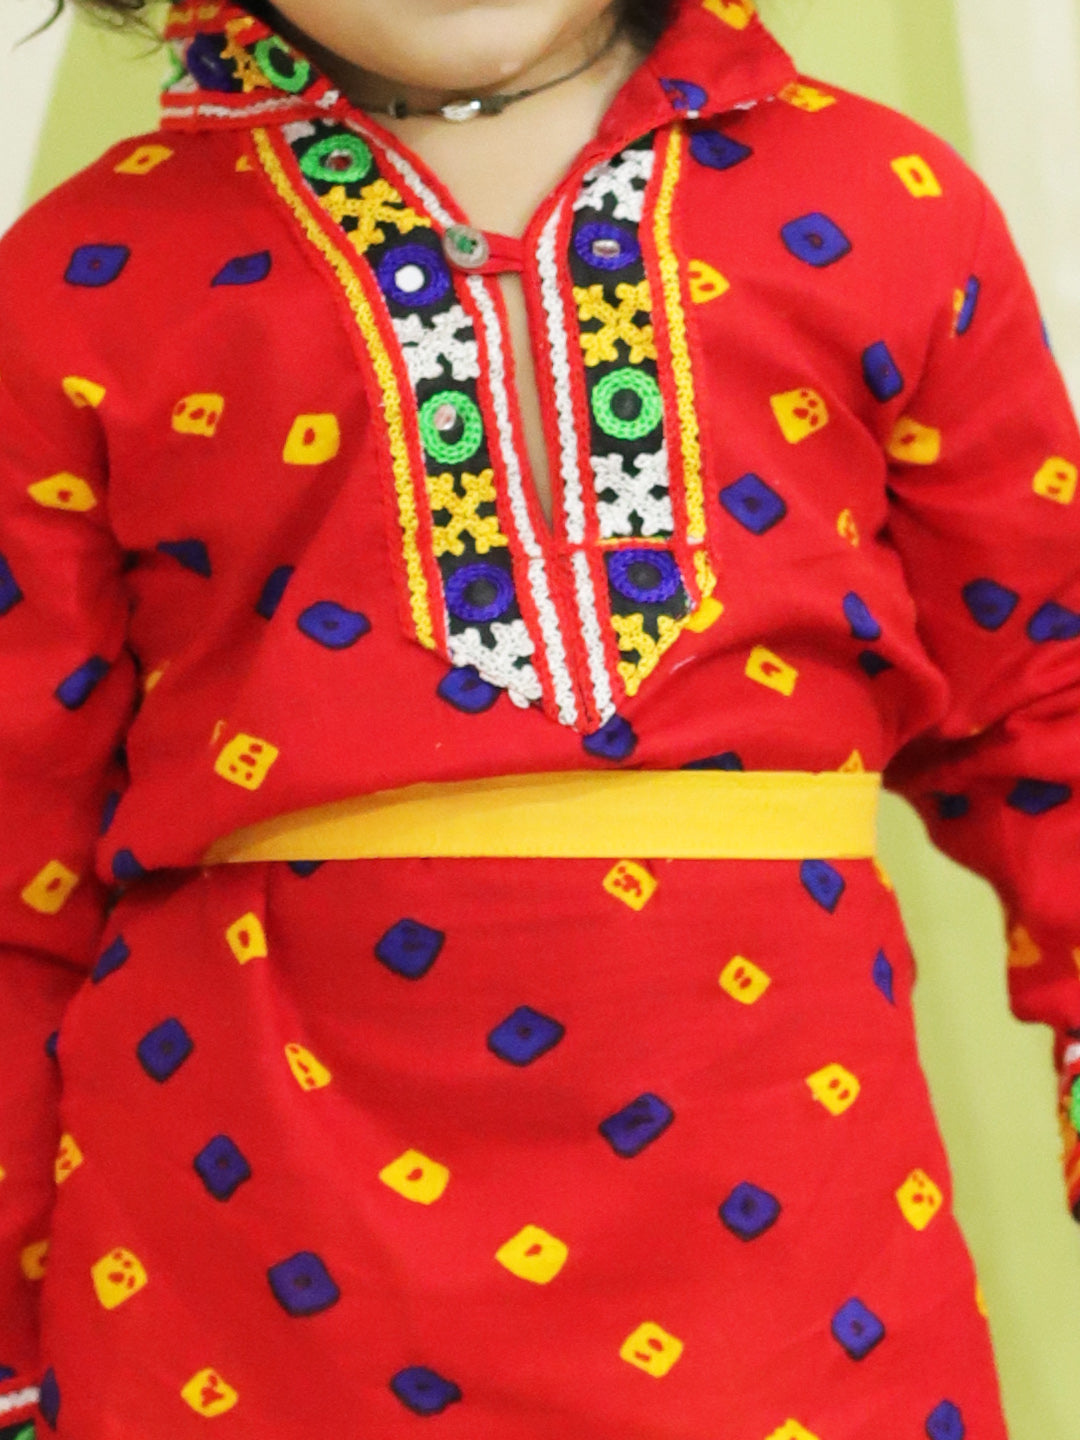 BownBee Sibling  Janmasthami Bandhani Print Cotton Kanhaiya Suit Dress with Bansuri, Mukut Belt and Mirror Work Chaniya Choli with Dupatta sets